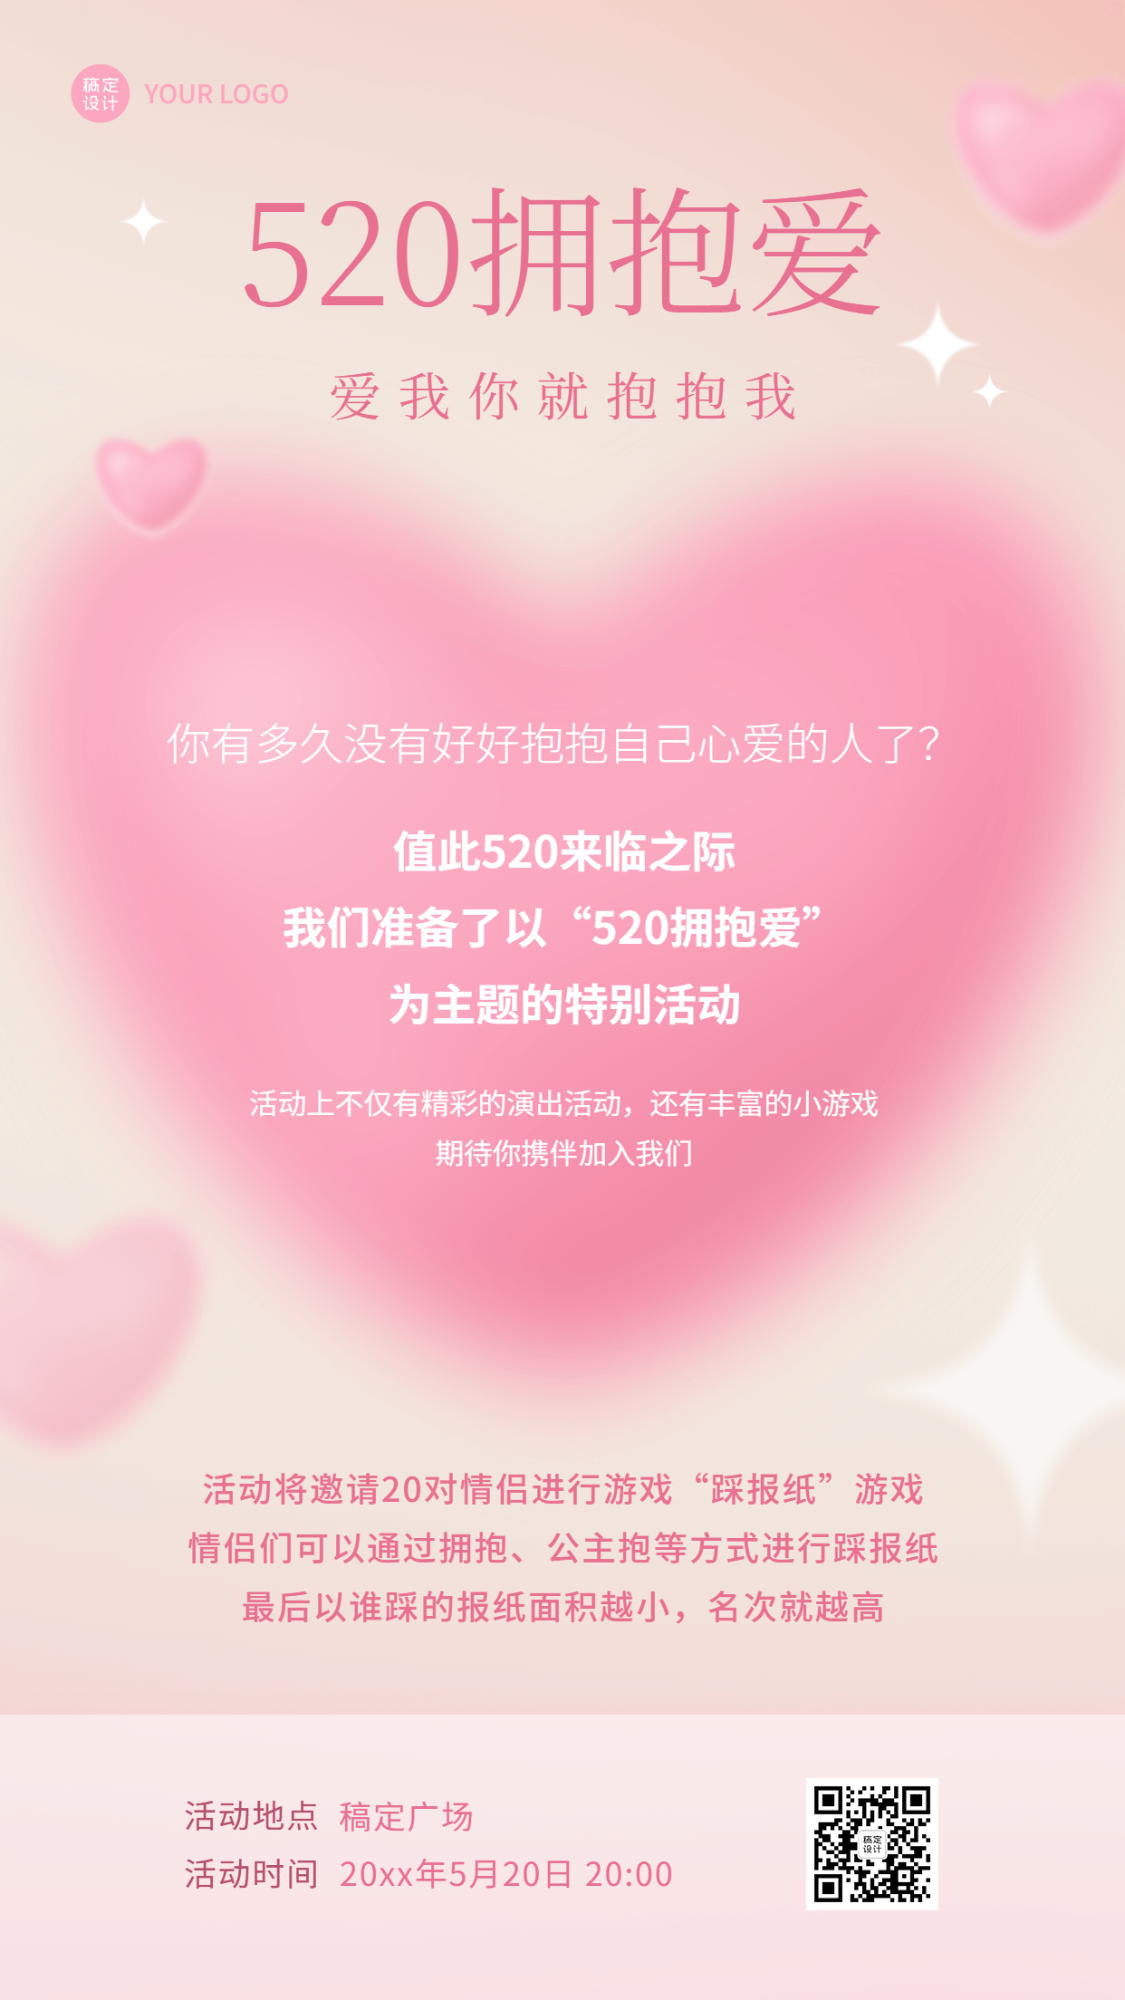 520情人节节日活动约会主题排版手机海报